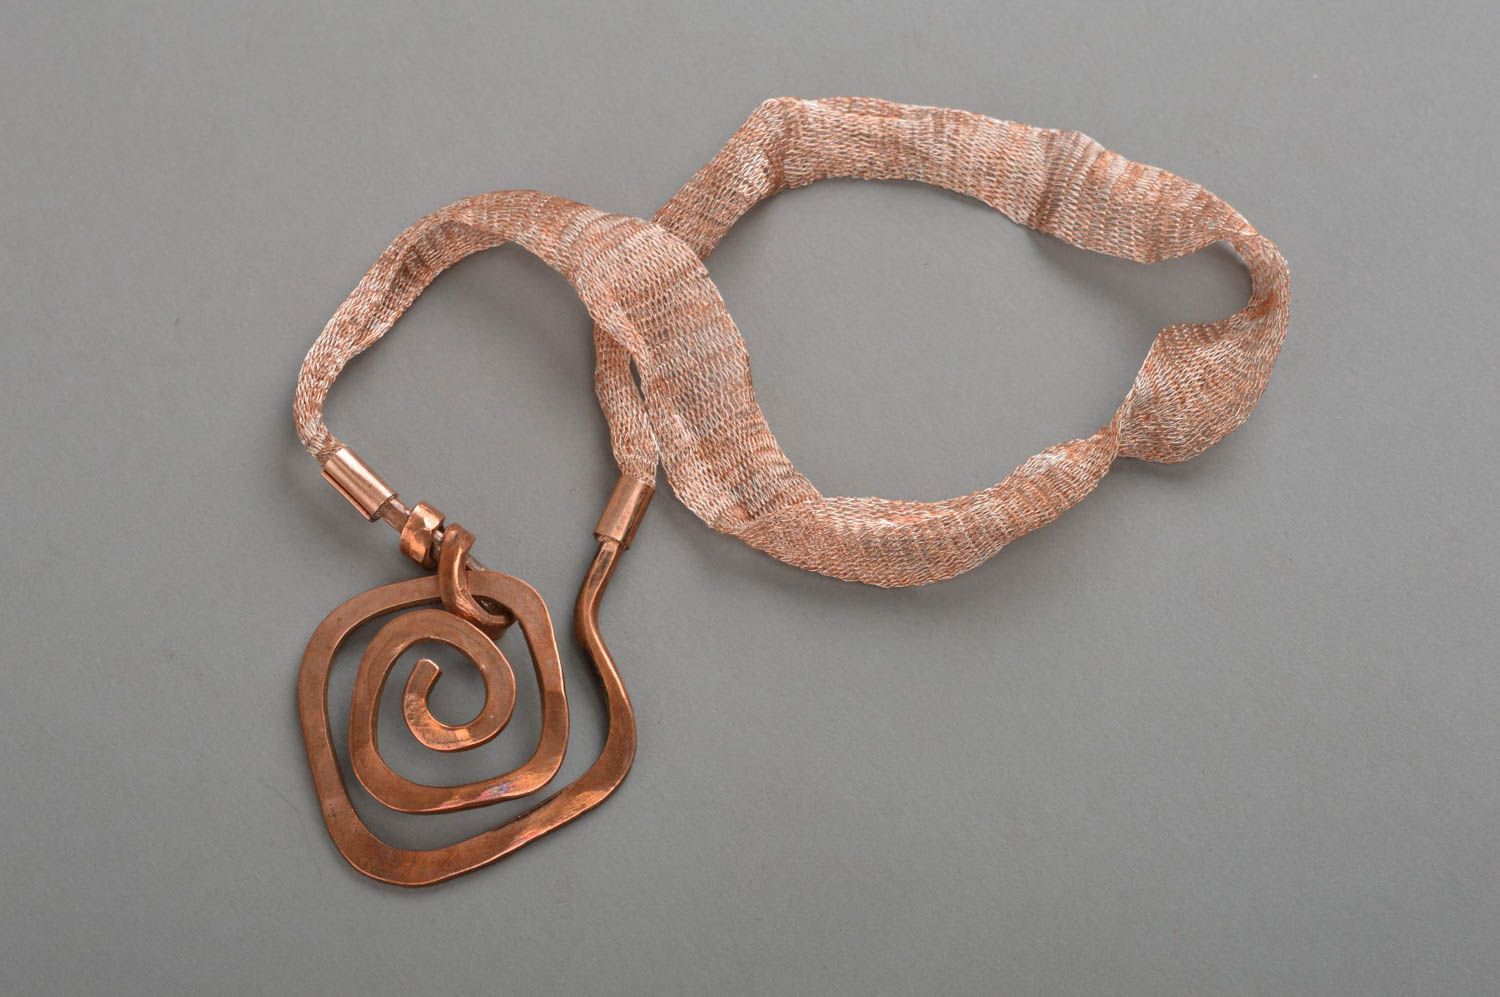 Авторский кованый кулон на шнурке из меди оригинальный аксессуар ручной работы фото 2